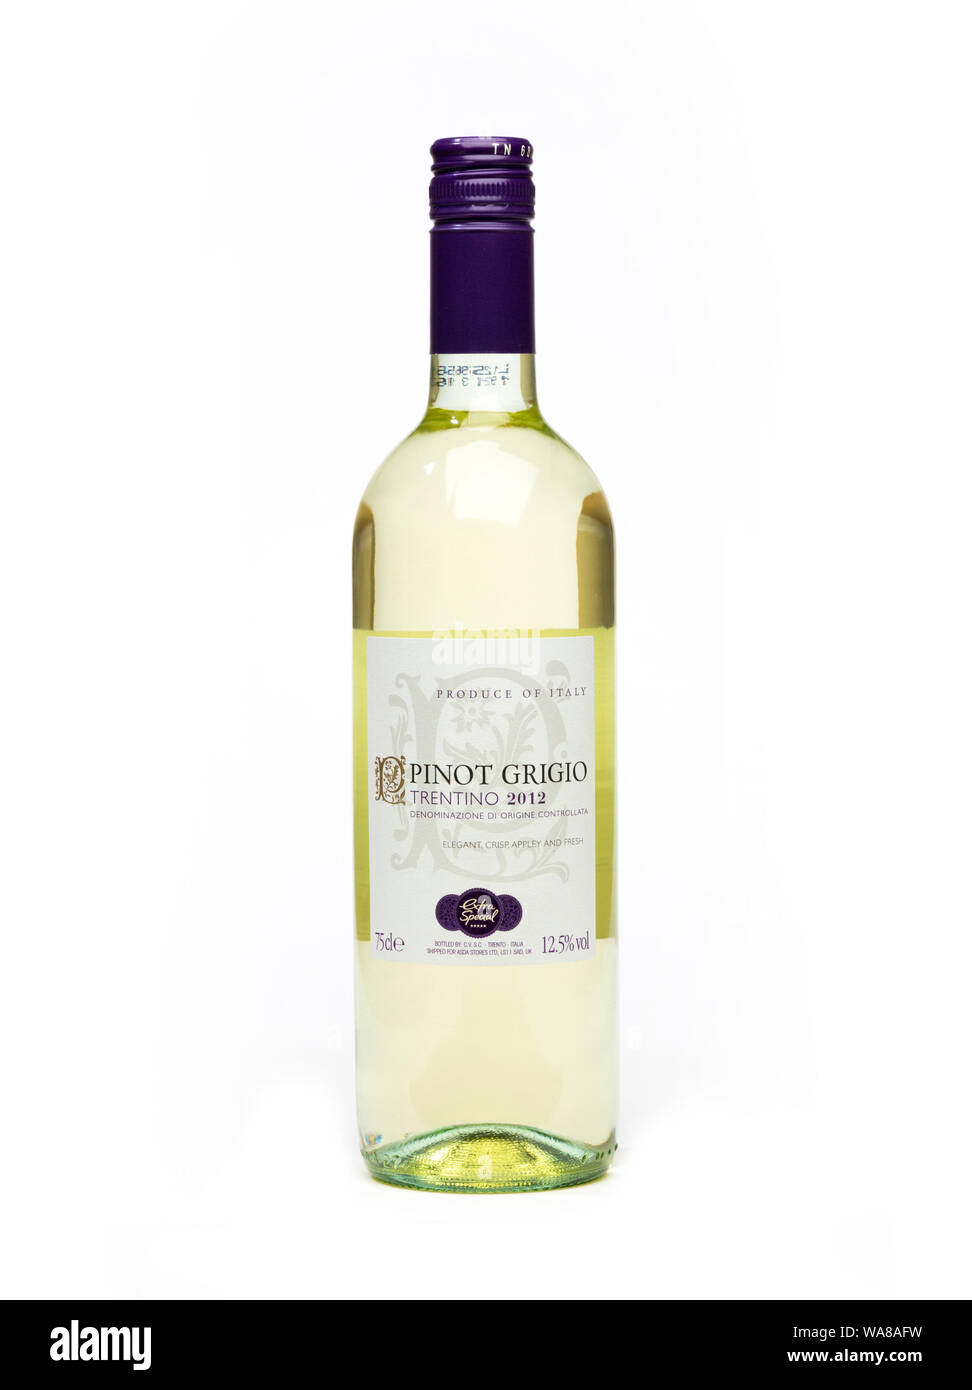 bottle of Pinot Grigio Trentino wine Stock Photo